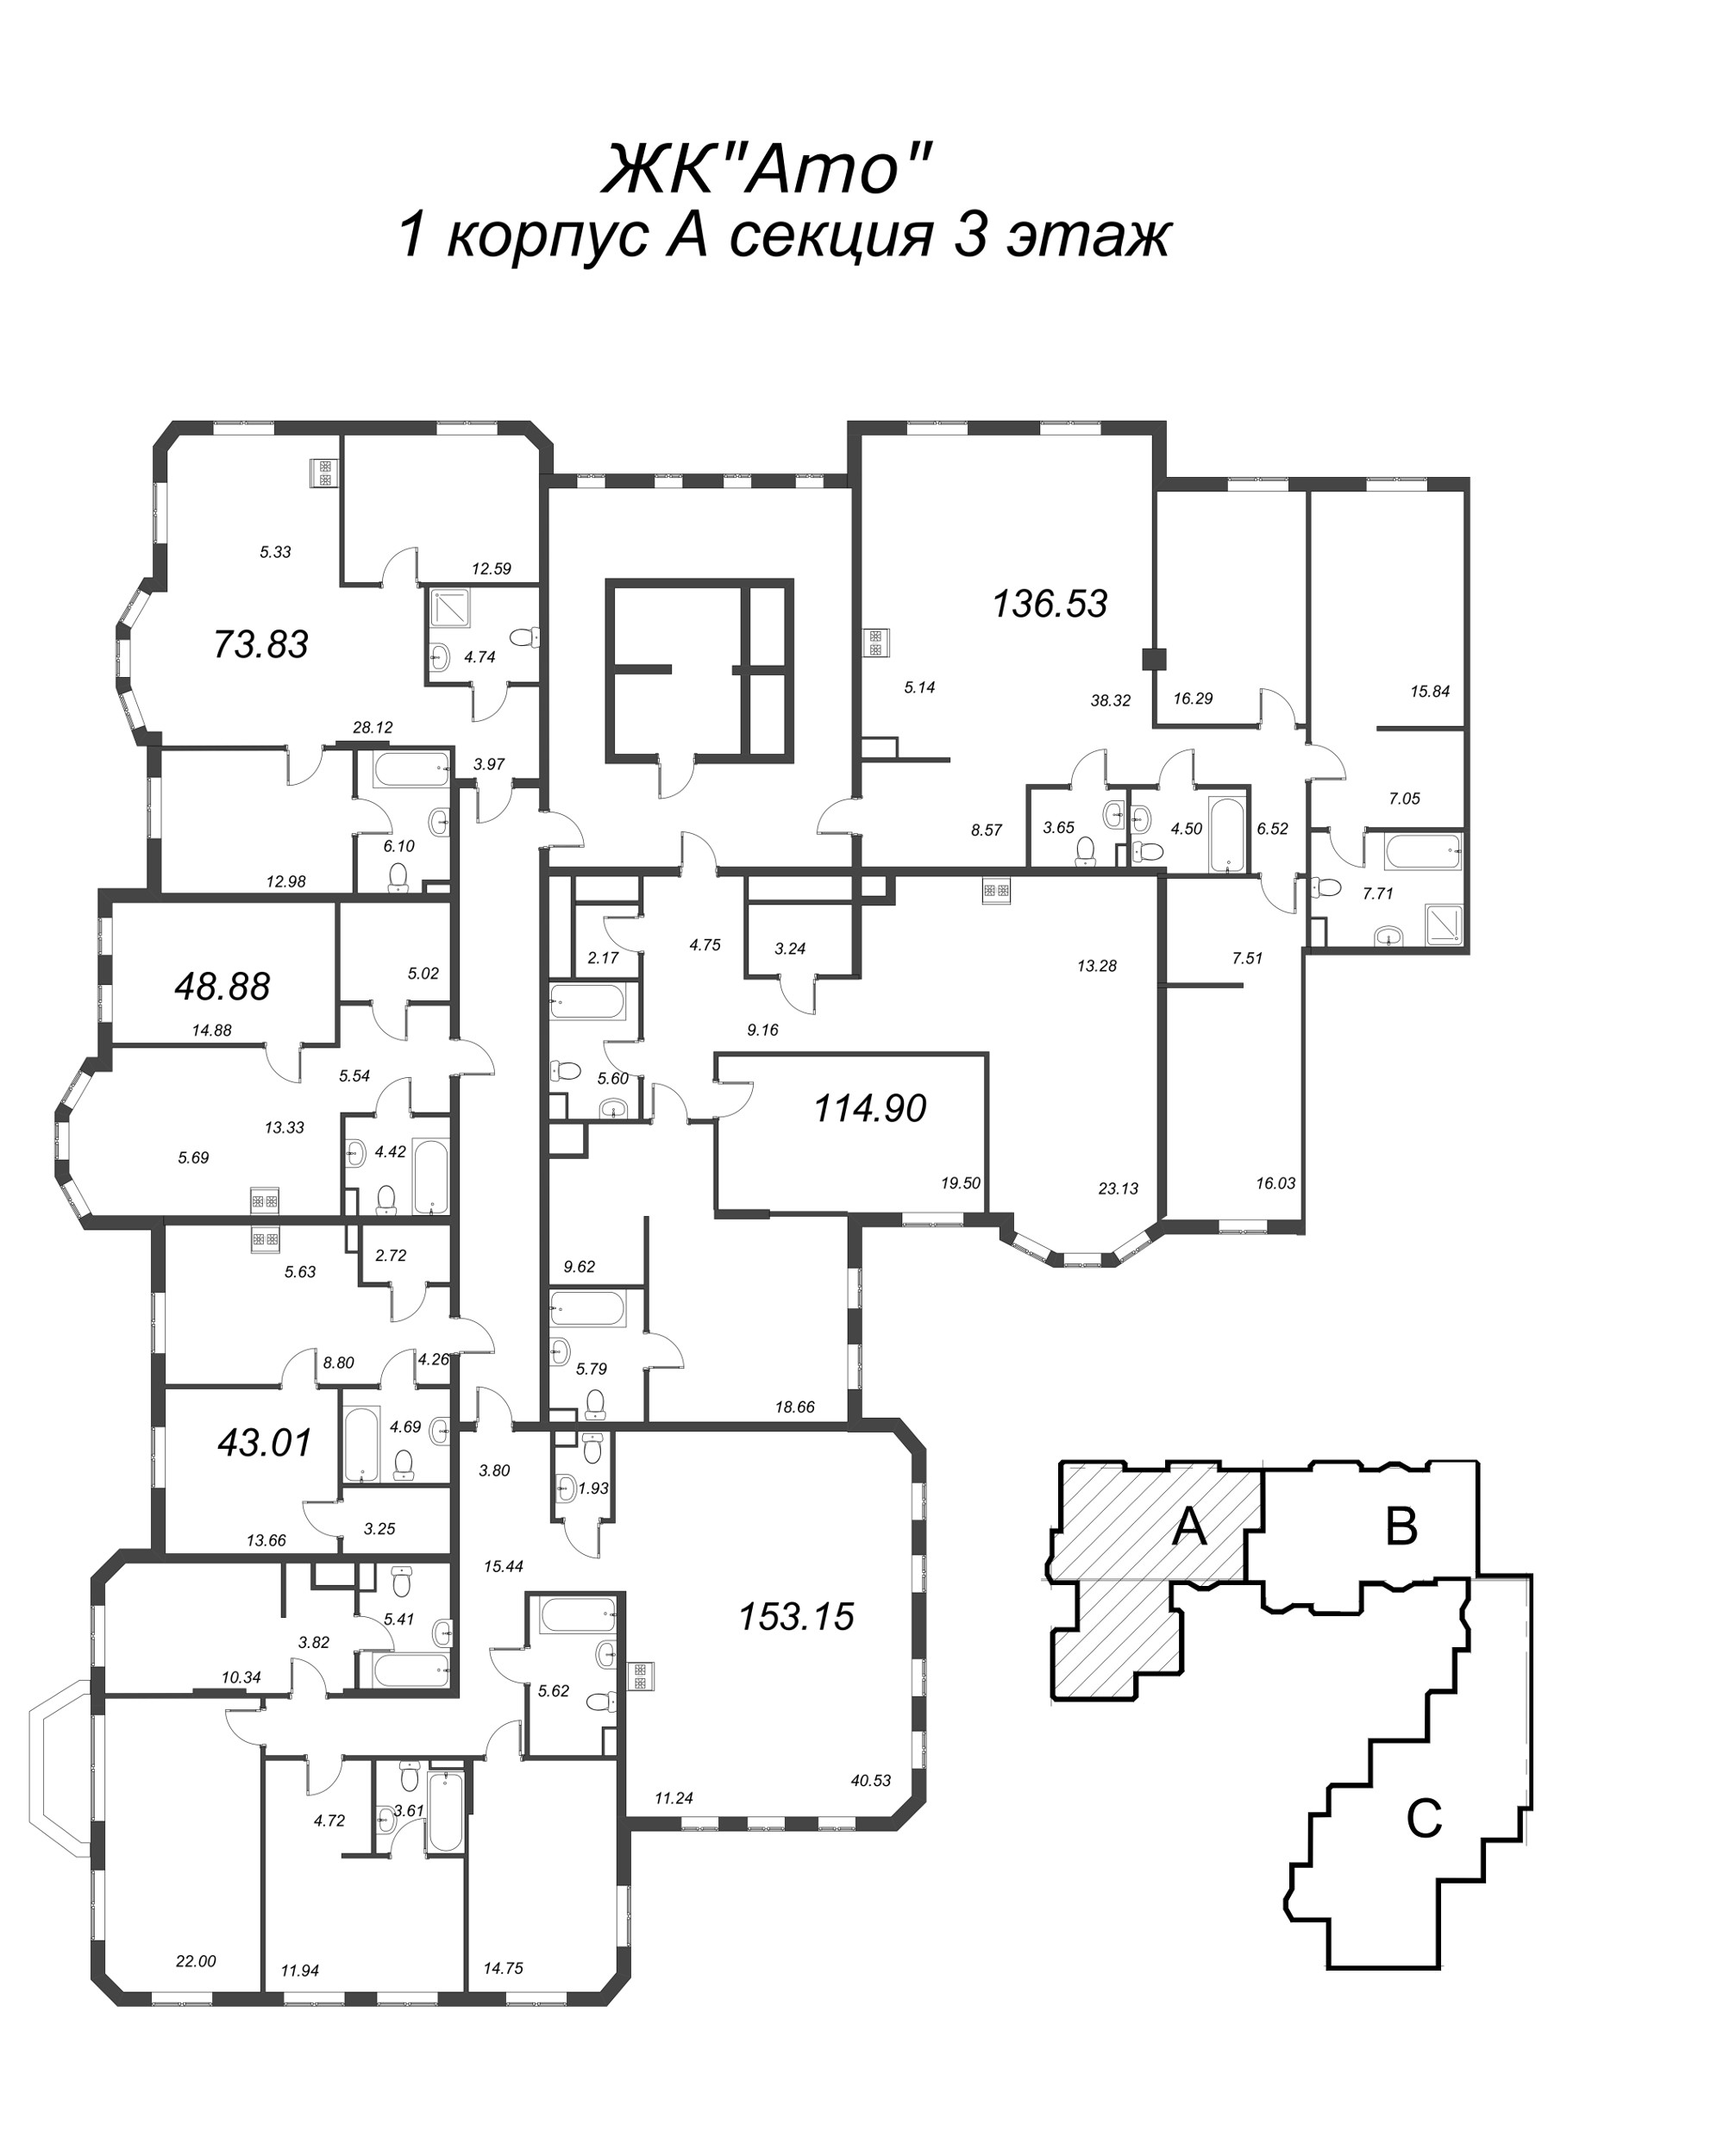 3-комнатная (Евро) квартира, 73.83 м² в ЖК "Amo" - планировка этажа